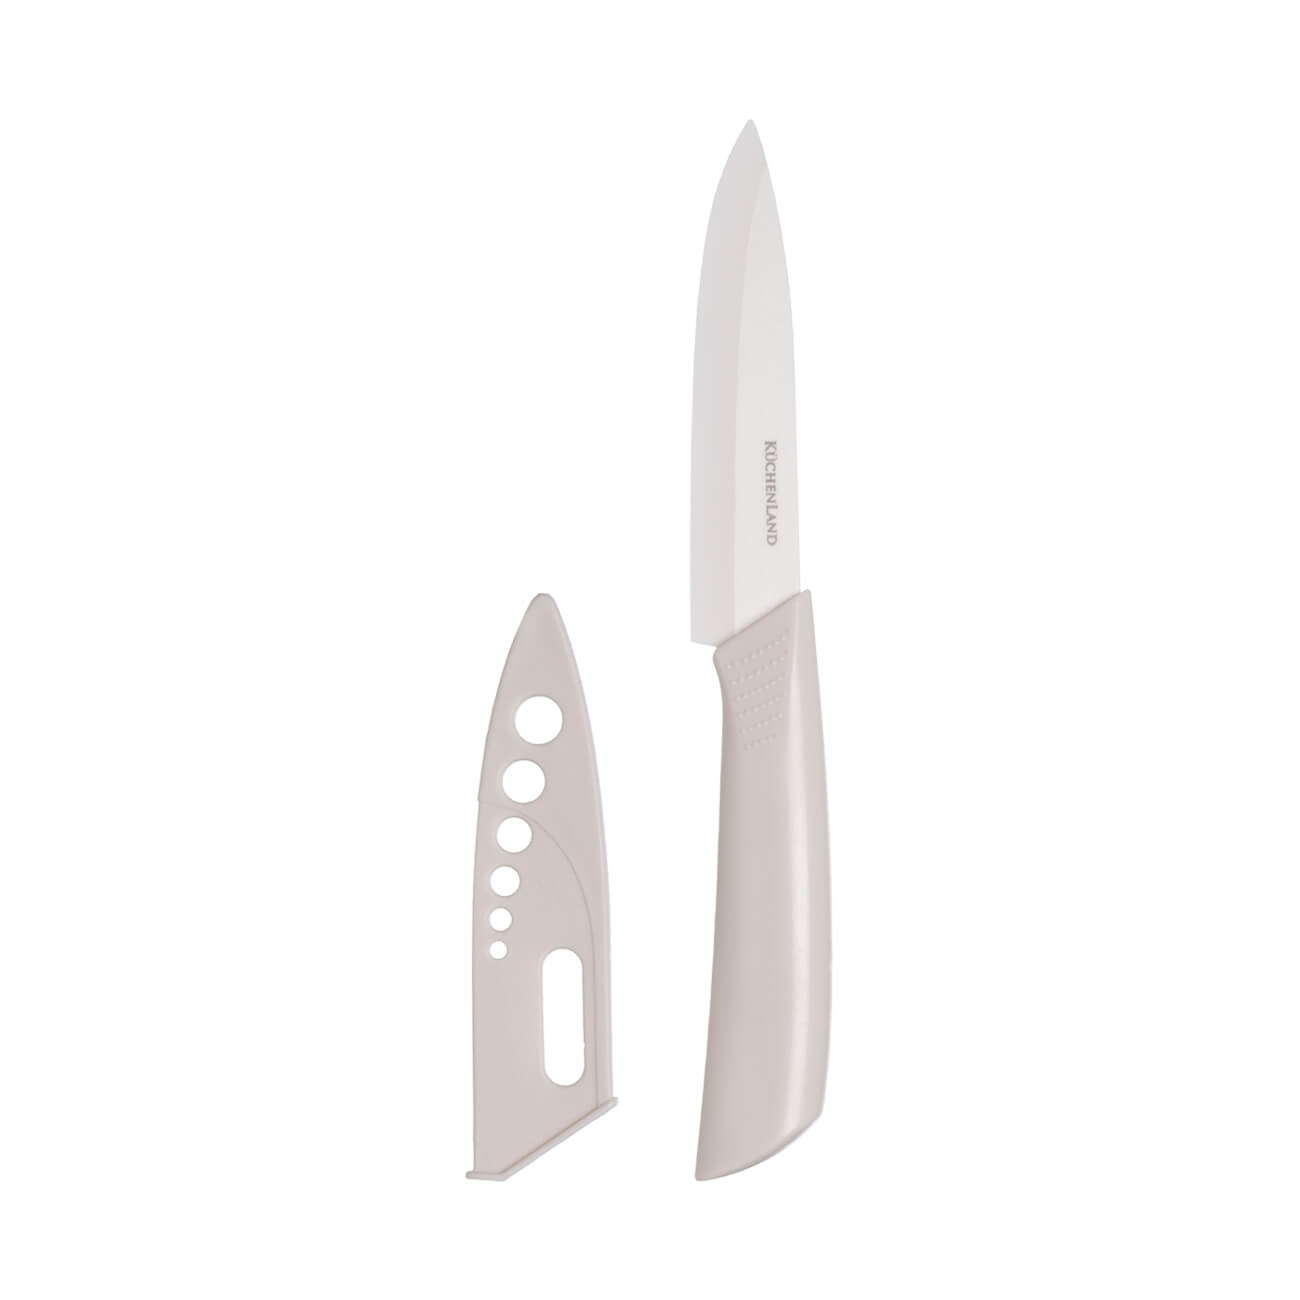 Нож для чистки овощей, 10 см, с чехлом, керамика/пластик, молочный, Regular перчатки для чистки овощей bradex шкурка